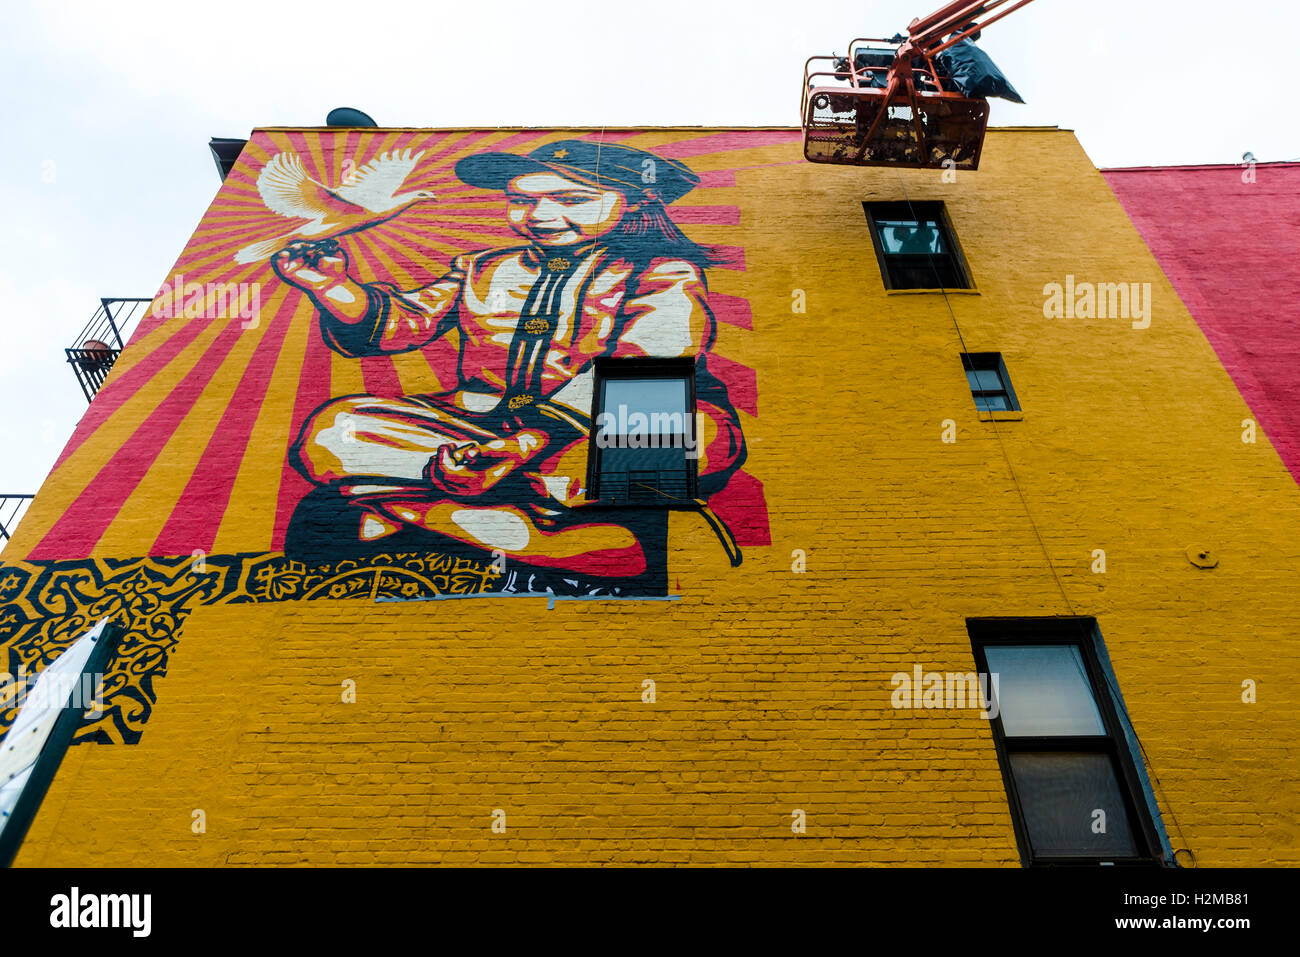 Nueva York, NY el 29 de septiembre de 2016 Shepard Fairey mural sube en la pared de un edificio en la Ciudad de Nueva York, el East Village. Titulado Viva La Revolucion" la pintura características Fairey's hija mayor fue creado originalmente en 2008. ©Stacy Walsh Rosenstock Foto de stock